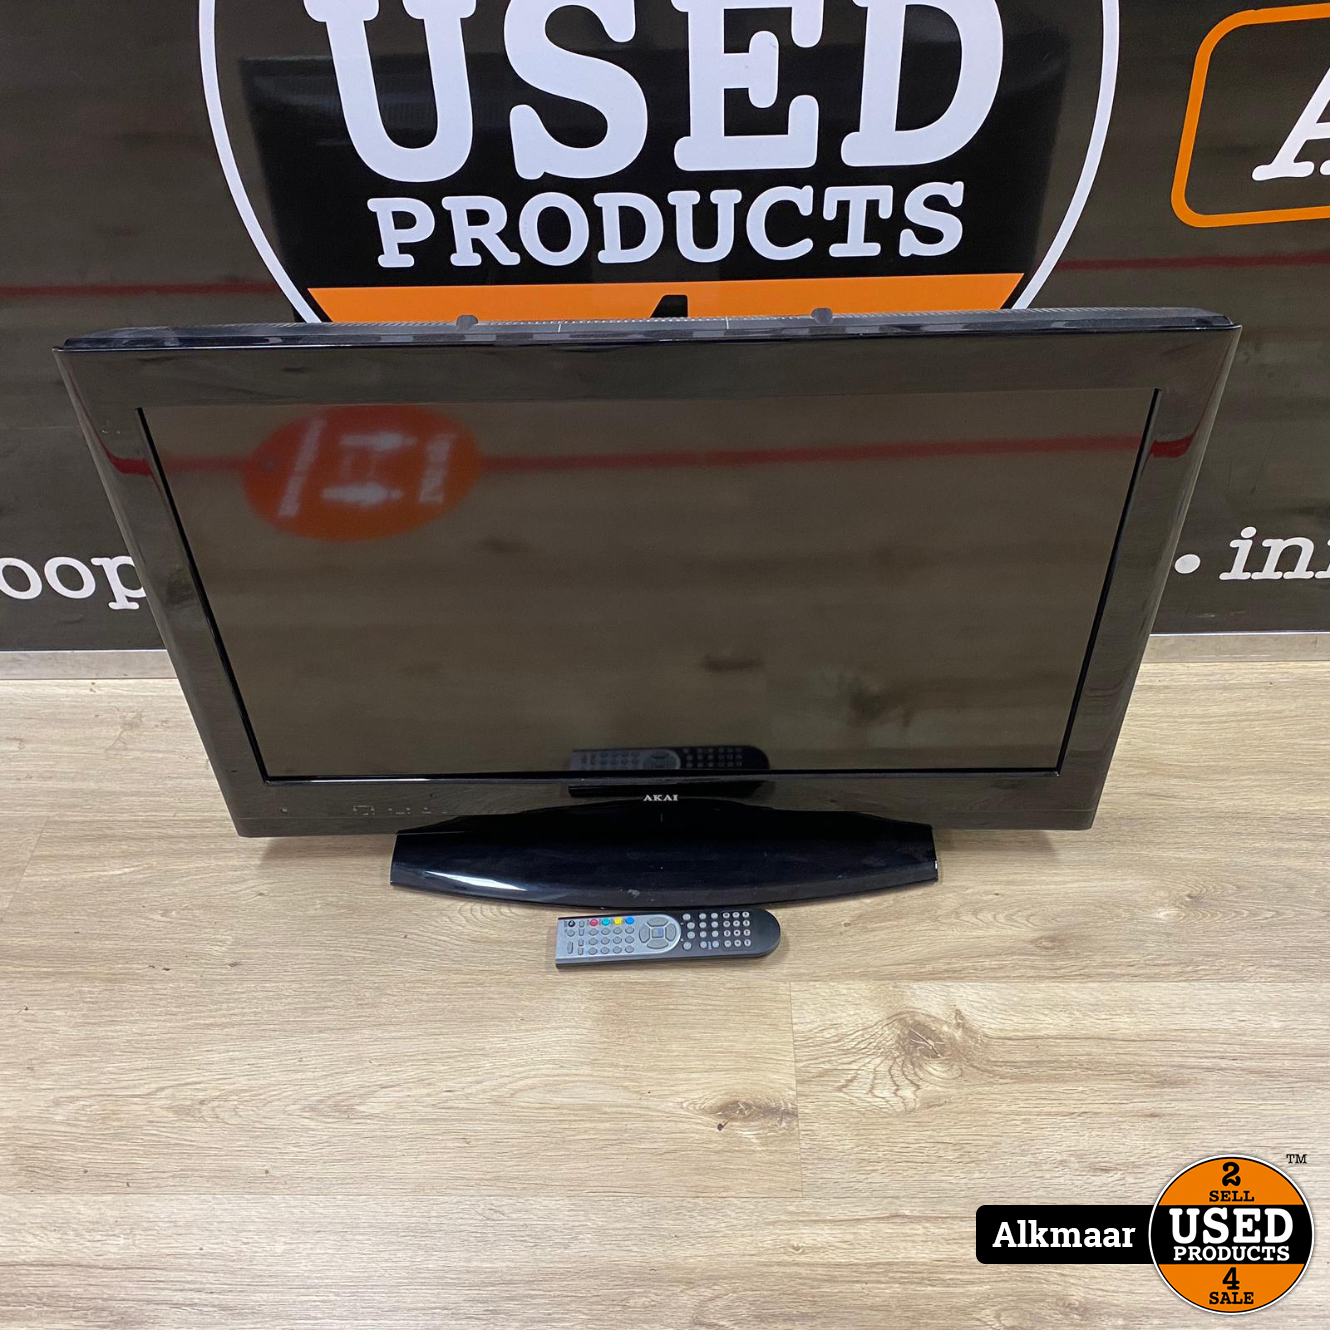 Gezond eten slijtage Veranderlijk Akai ALD3218 32 inch HD-ready TV | gebruikt - Used Products Alkmaar